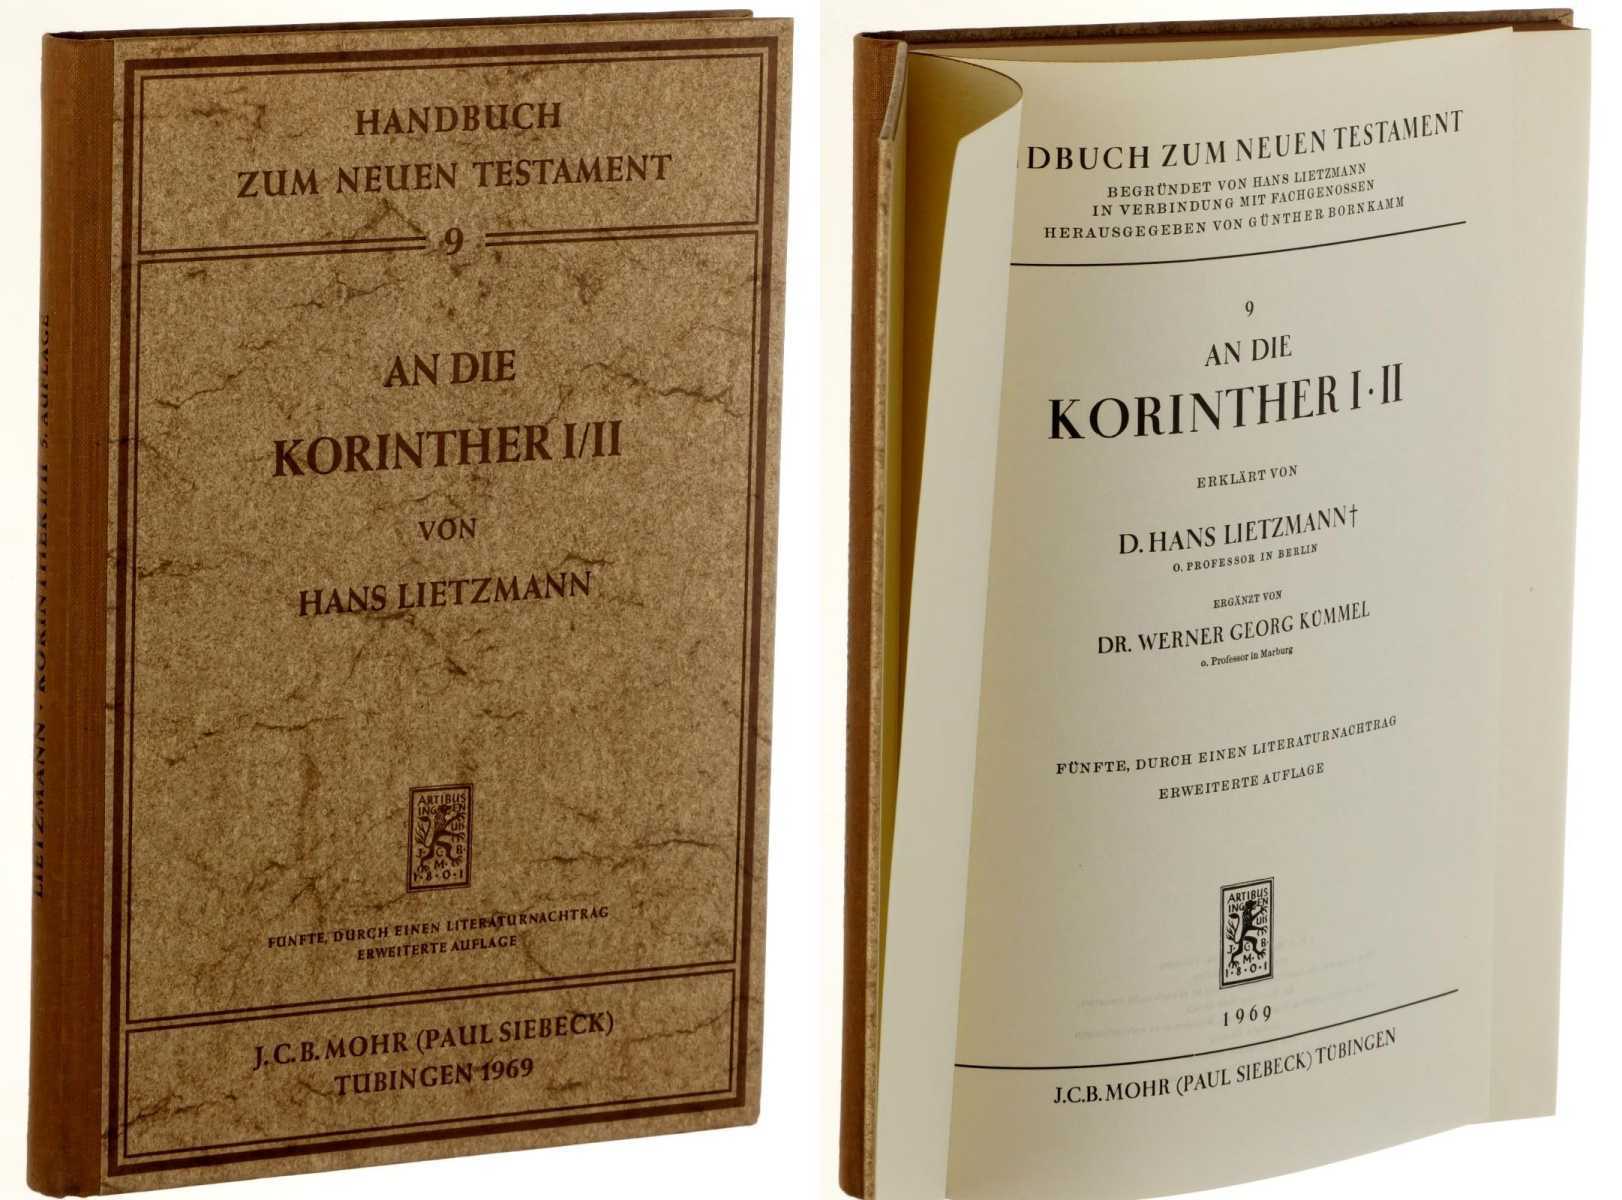 Lietzmann, Hans:  An die Korinther I/II. Ergänzt von Werner Georg Kümmel. 